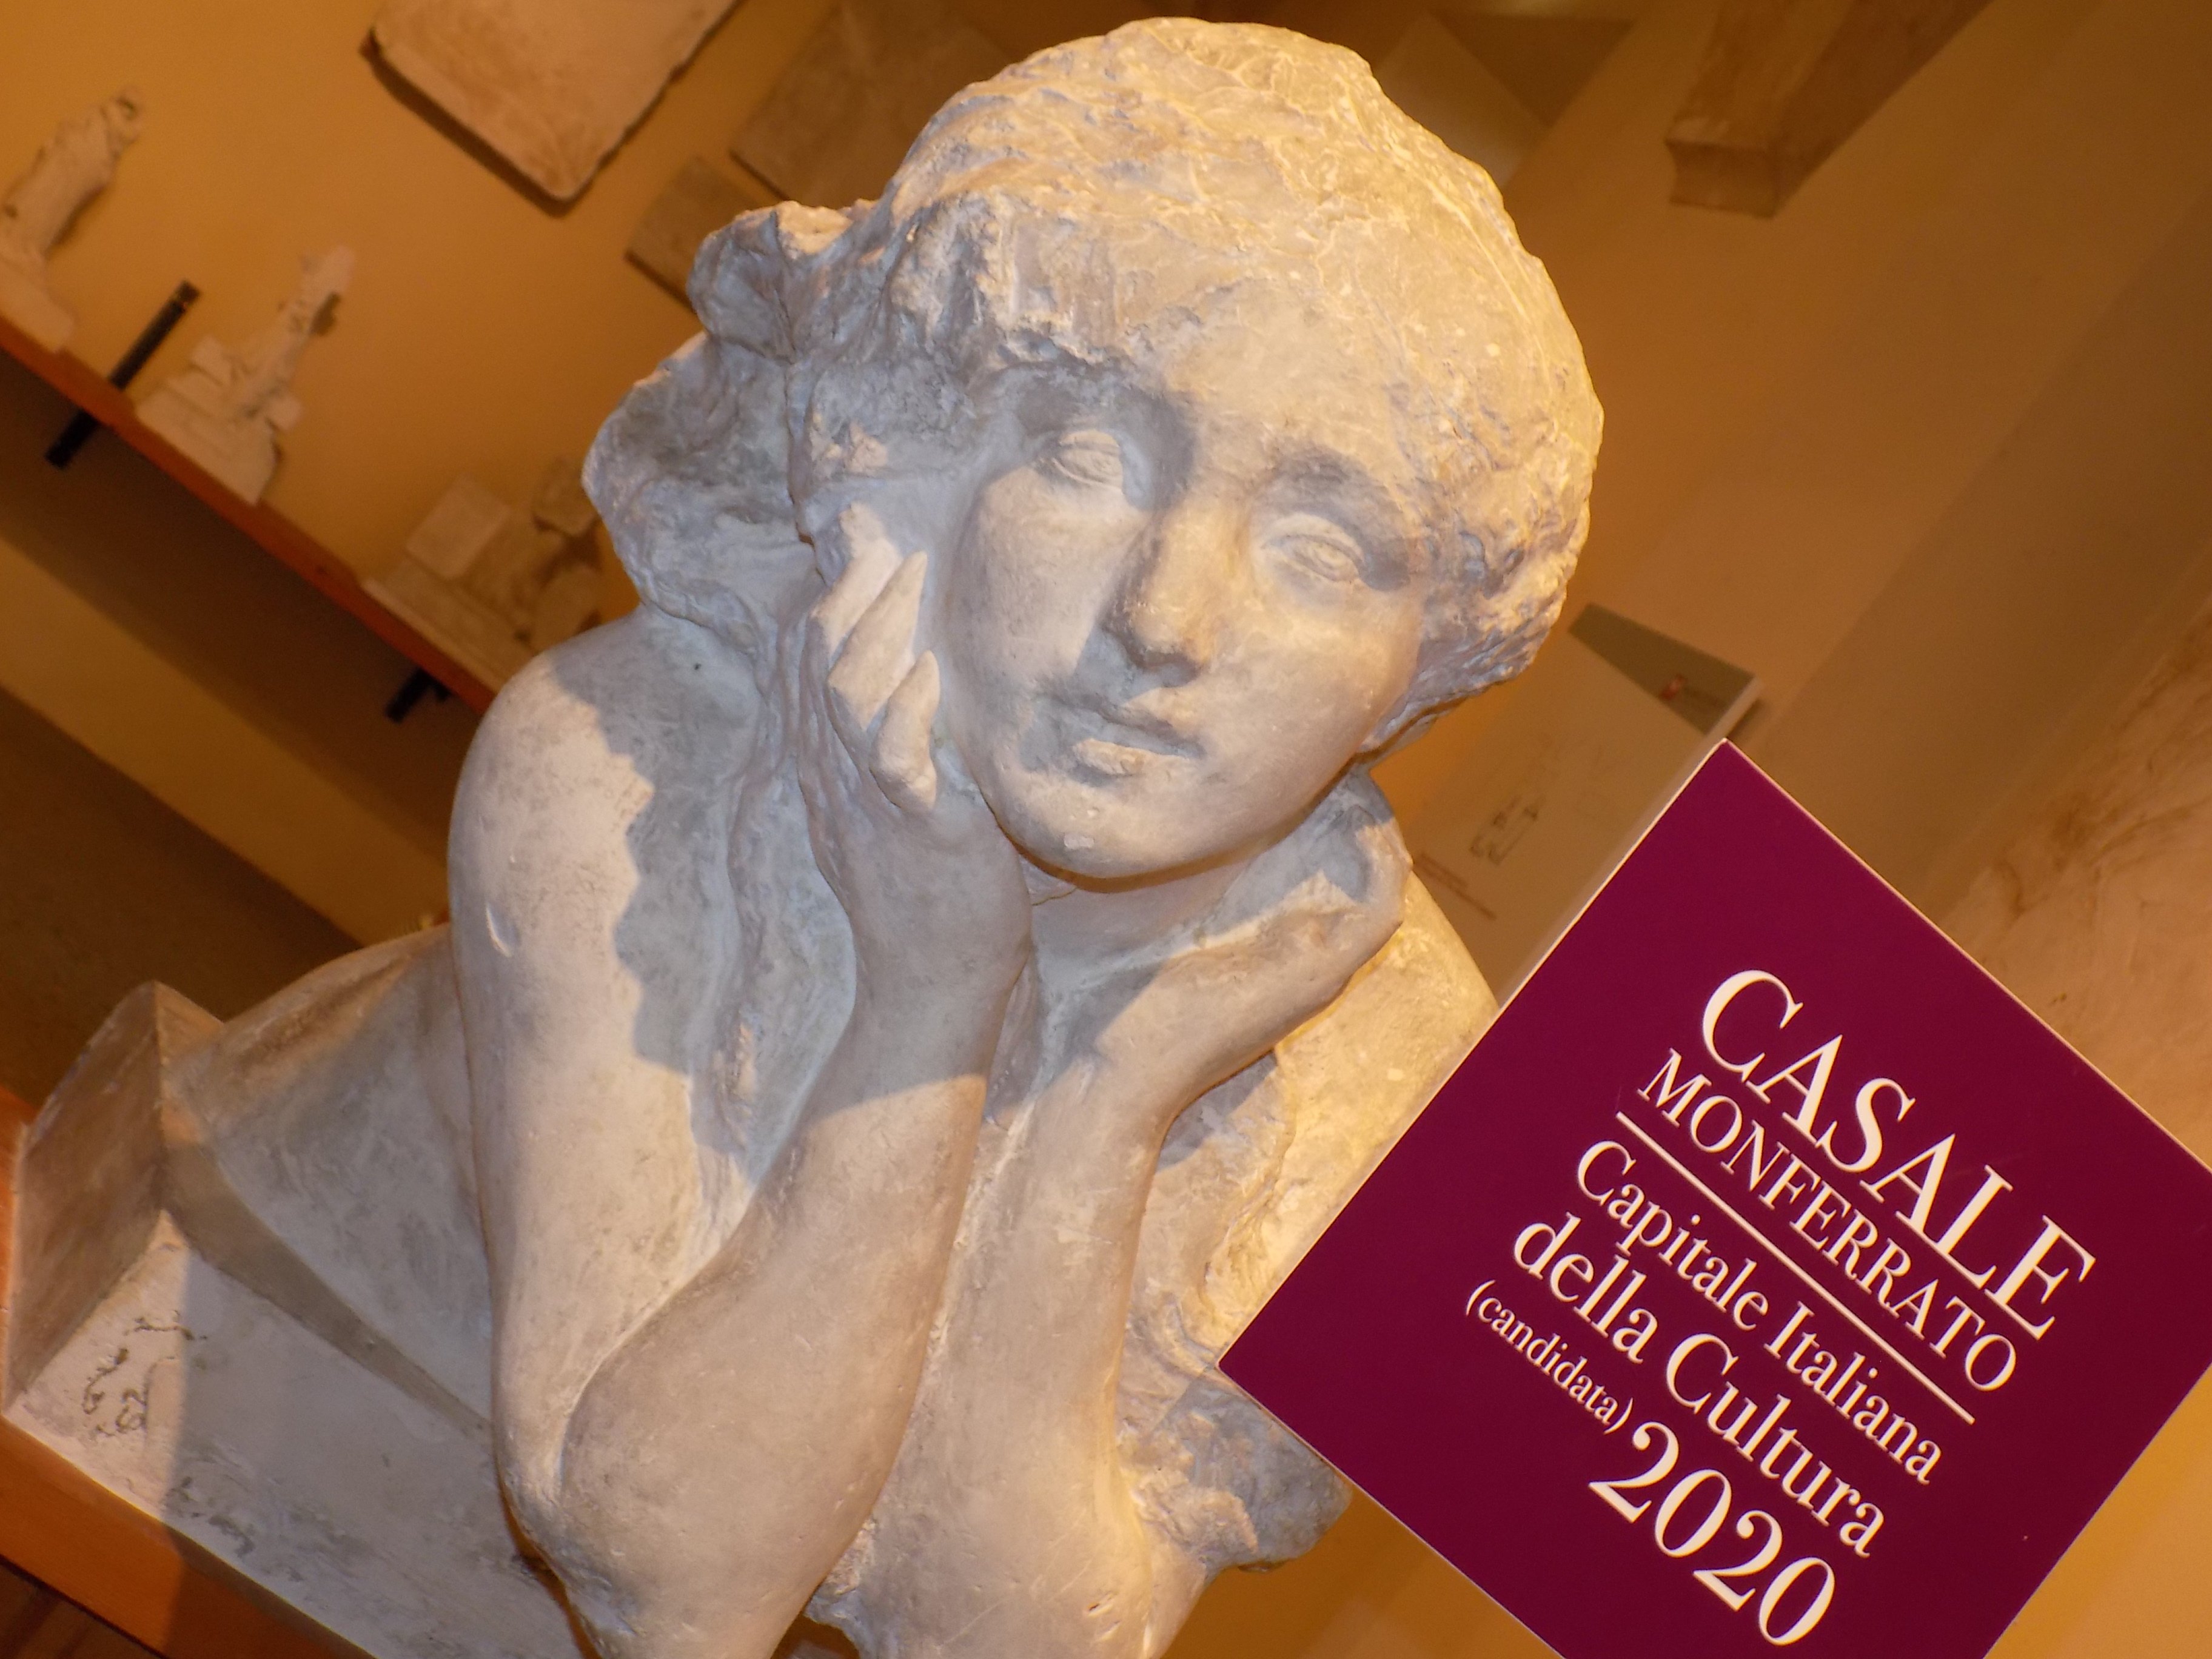 Musei gratis per sostenere Casale capitale italiana cultura 2020